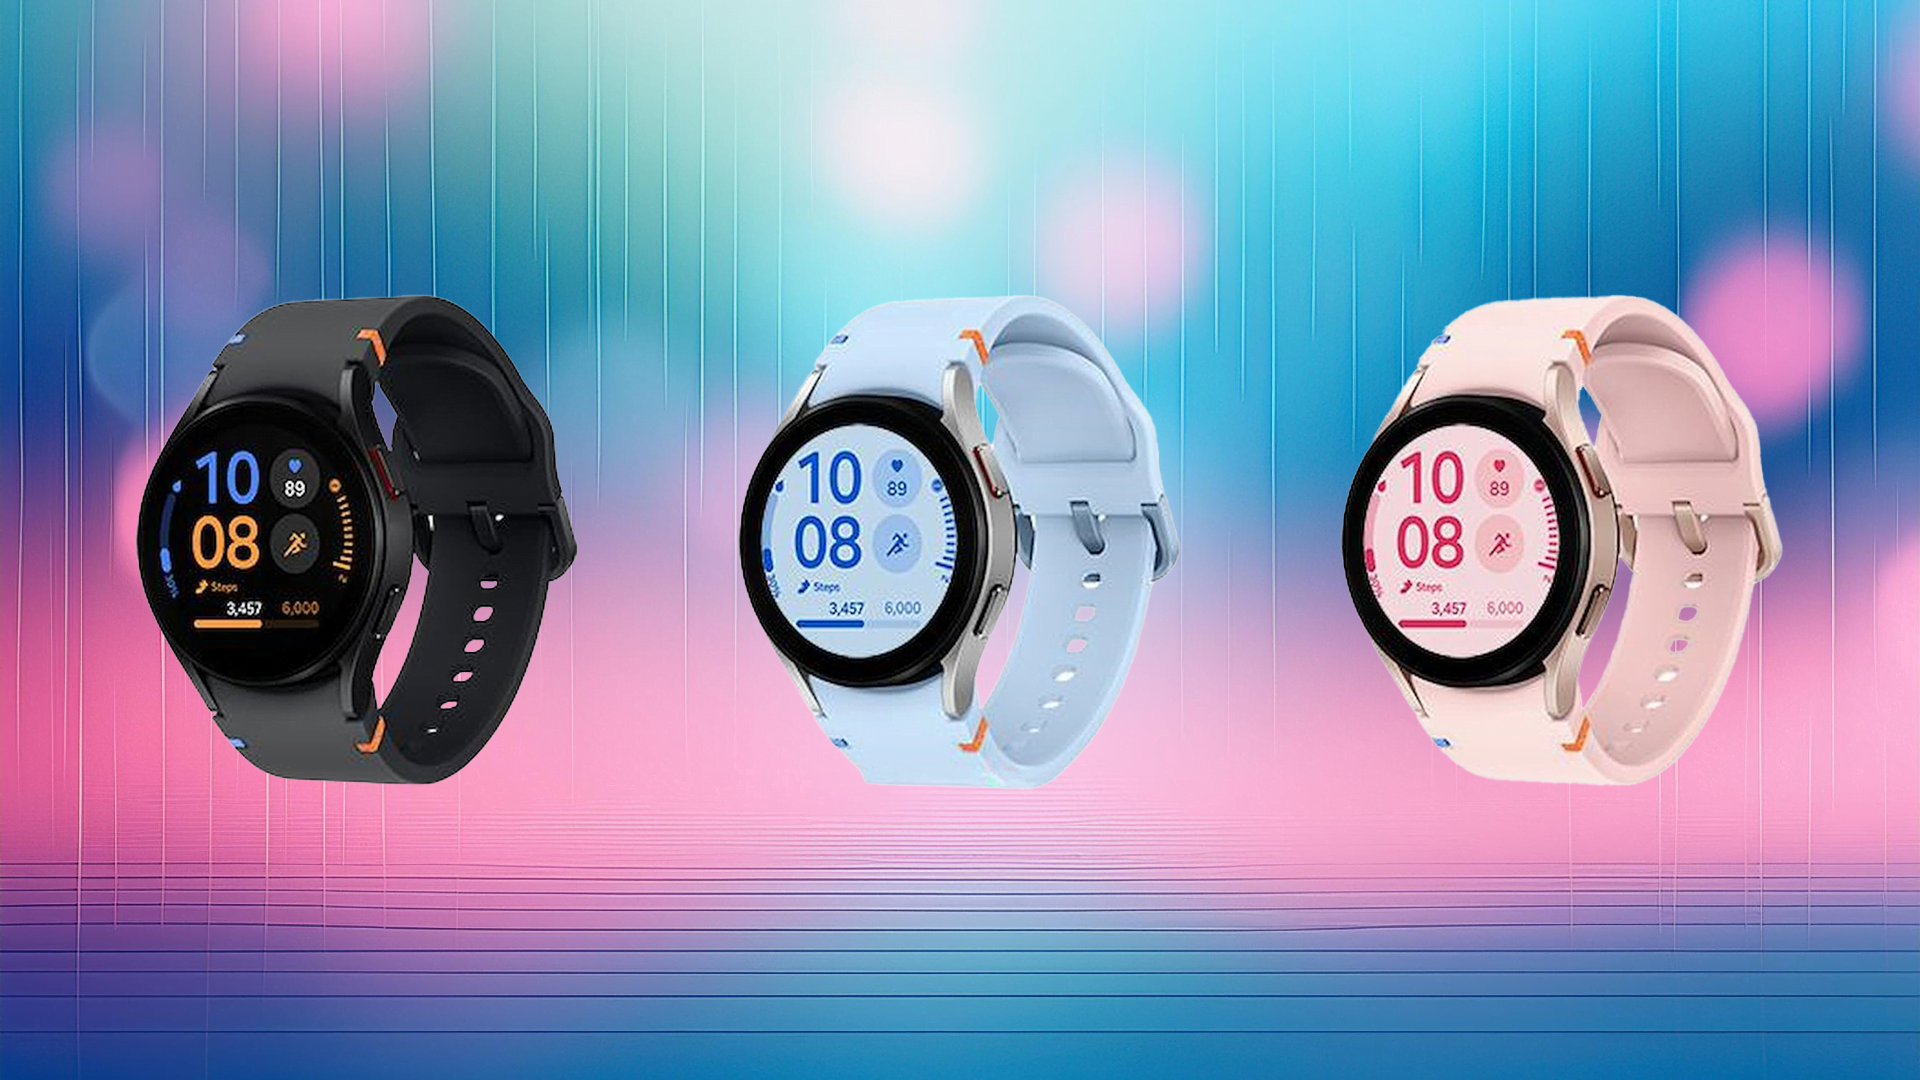 Trzy inteligentne zegarki z różnymi kolorami pasków (czarny, niebieski, różowy) na kolorowym tle.